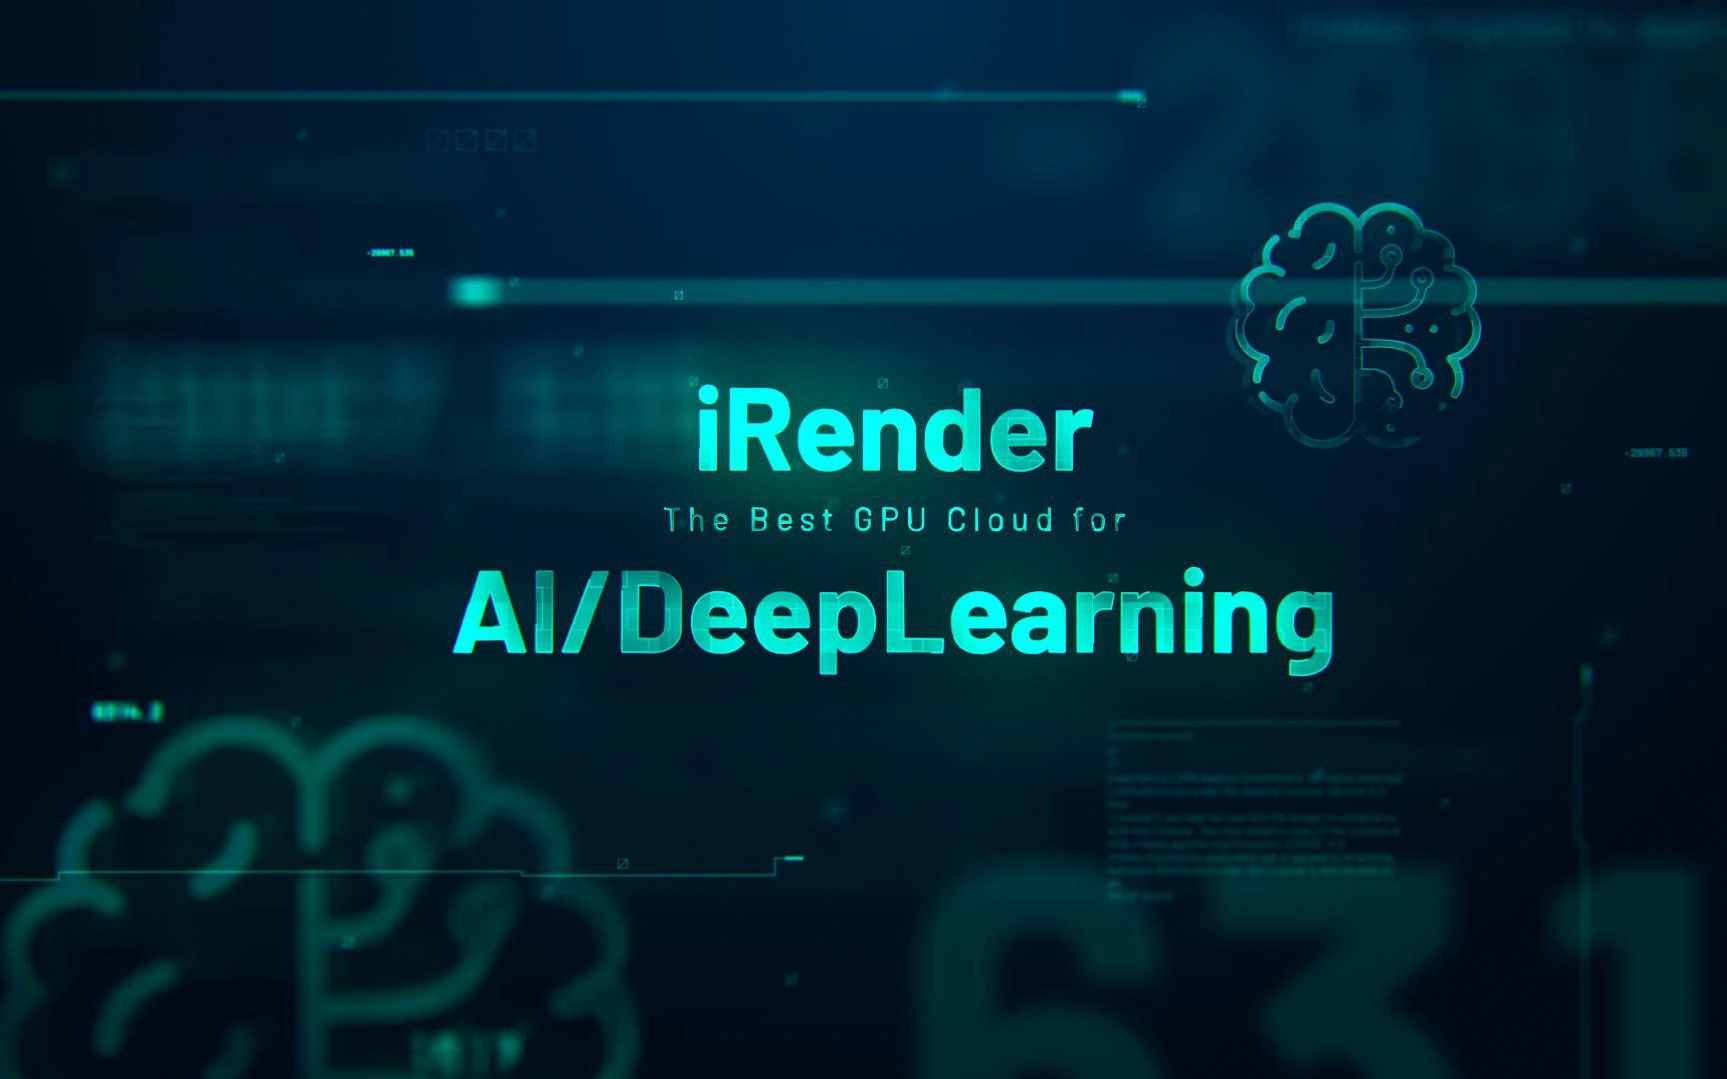 iRender tham vọng bình dân hóa dịch vụ Cloud Computing trong lĩnh vực AI/Machine Learning tại Việt Nam